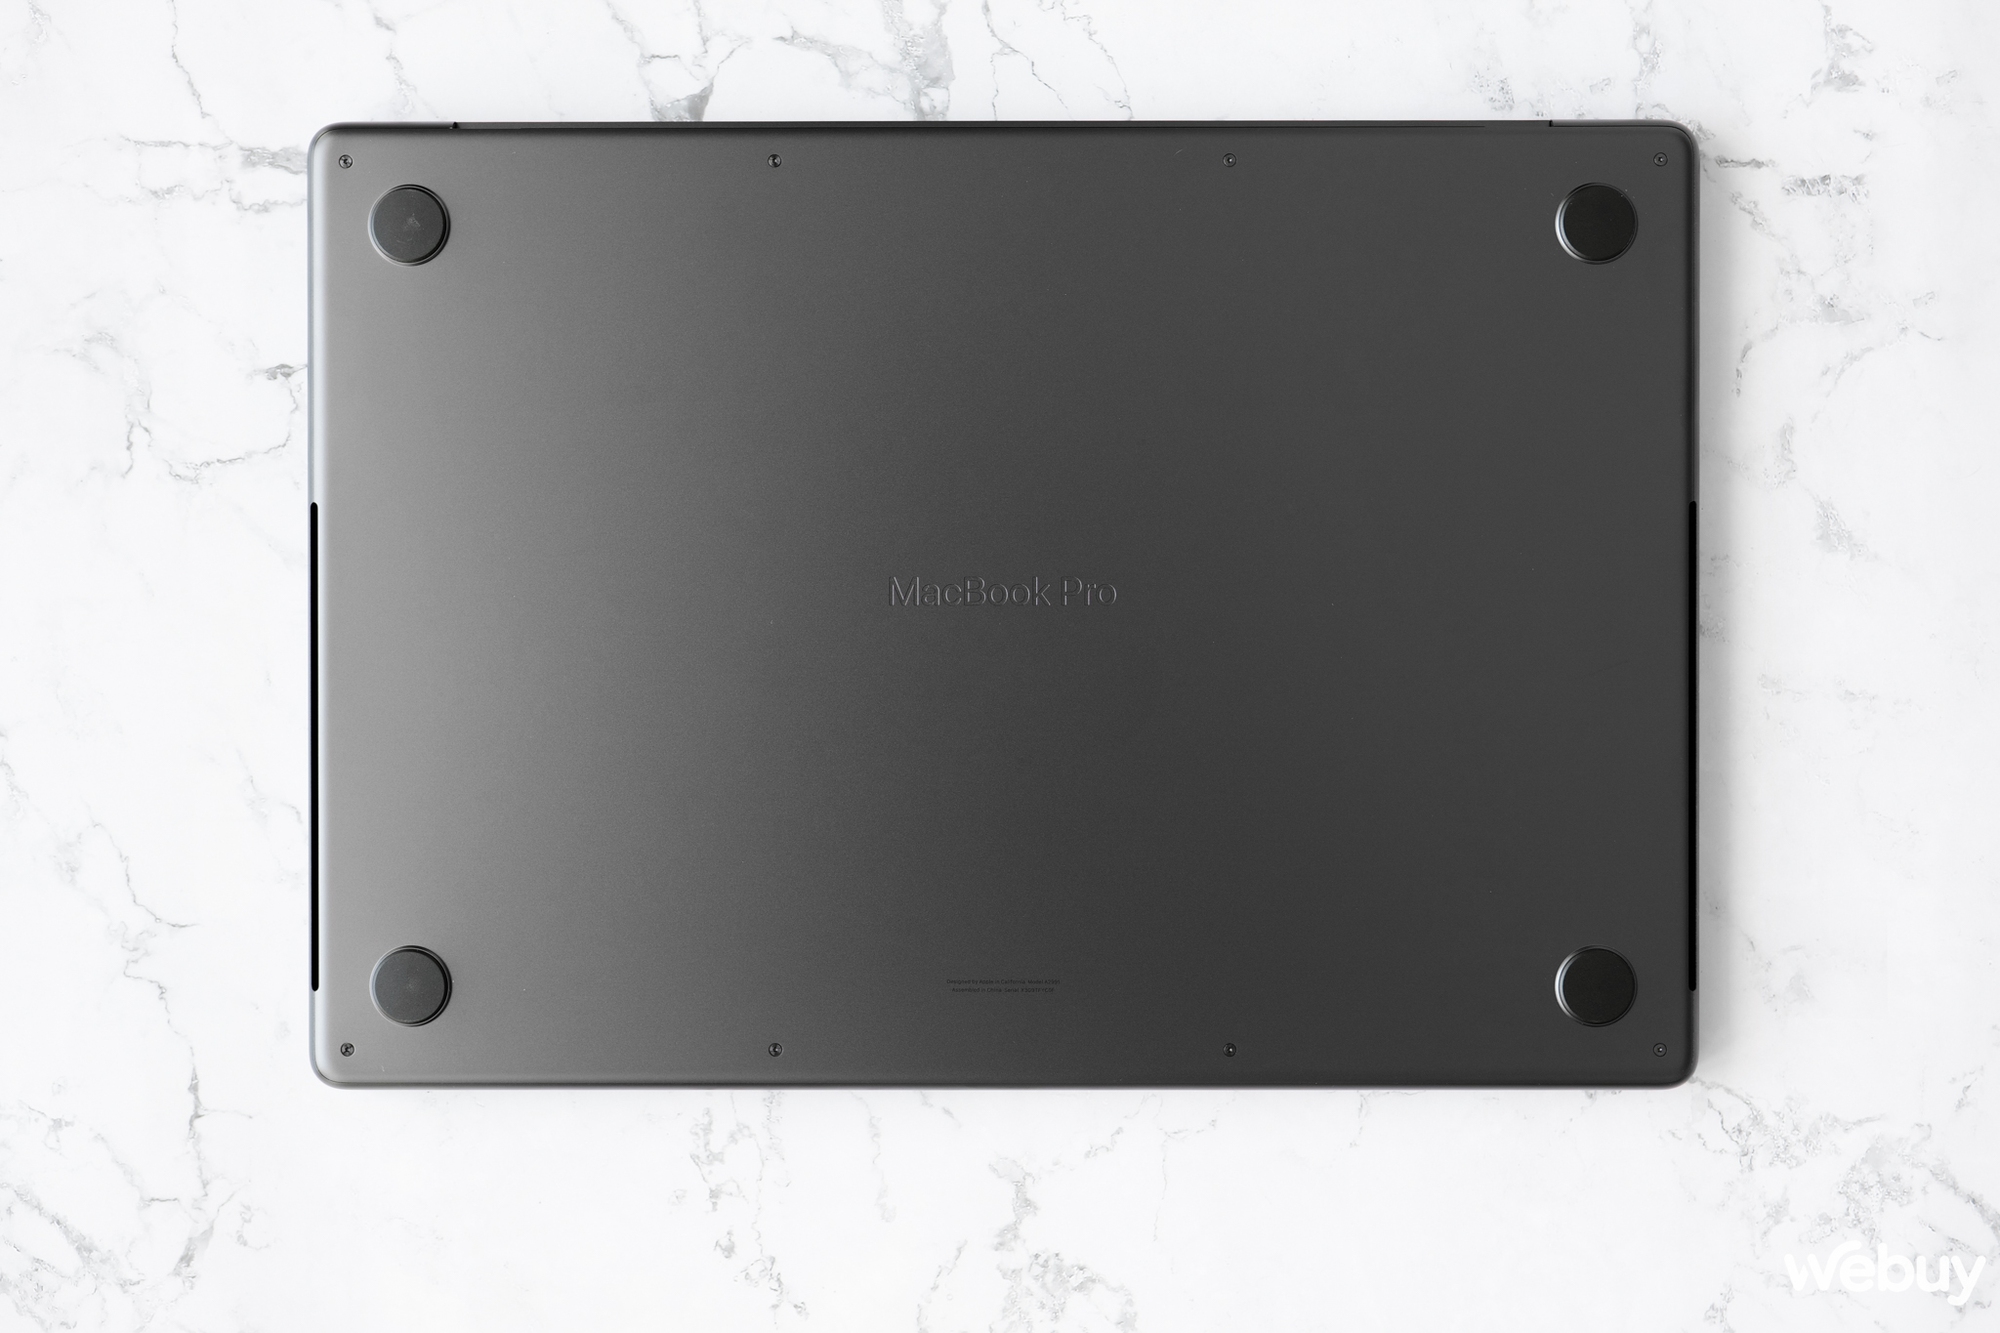 Mở hộp bộ đôi MacBook Pro M3 mới: Có thêm màu đen cực đẹp, hiệu năng vô đối, giá chính hãng từ 39.99 triệu đồng- Ảnh 9.